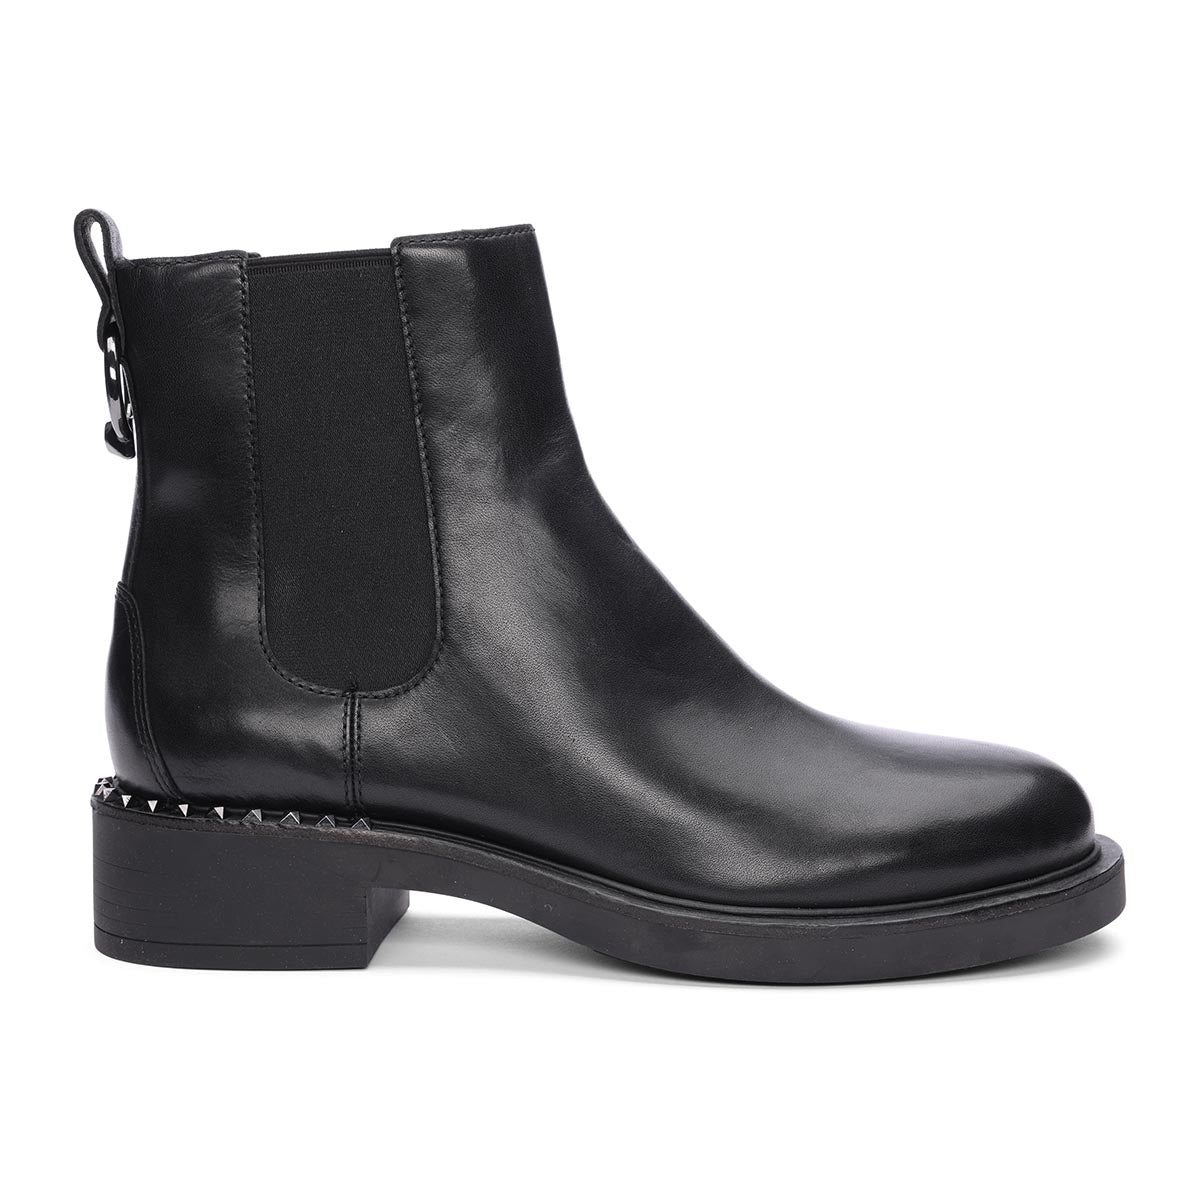 Fancy Chelsea Bootie | Black Chelsea Boots | ASH Shoes